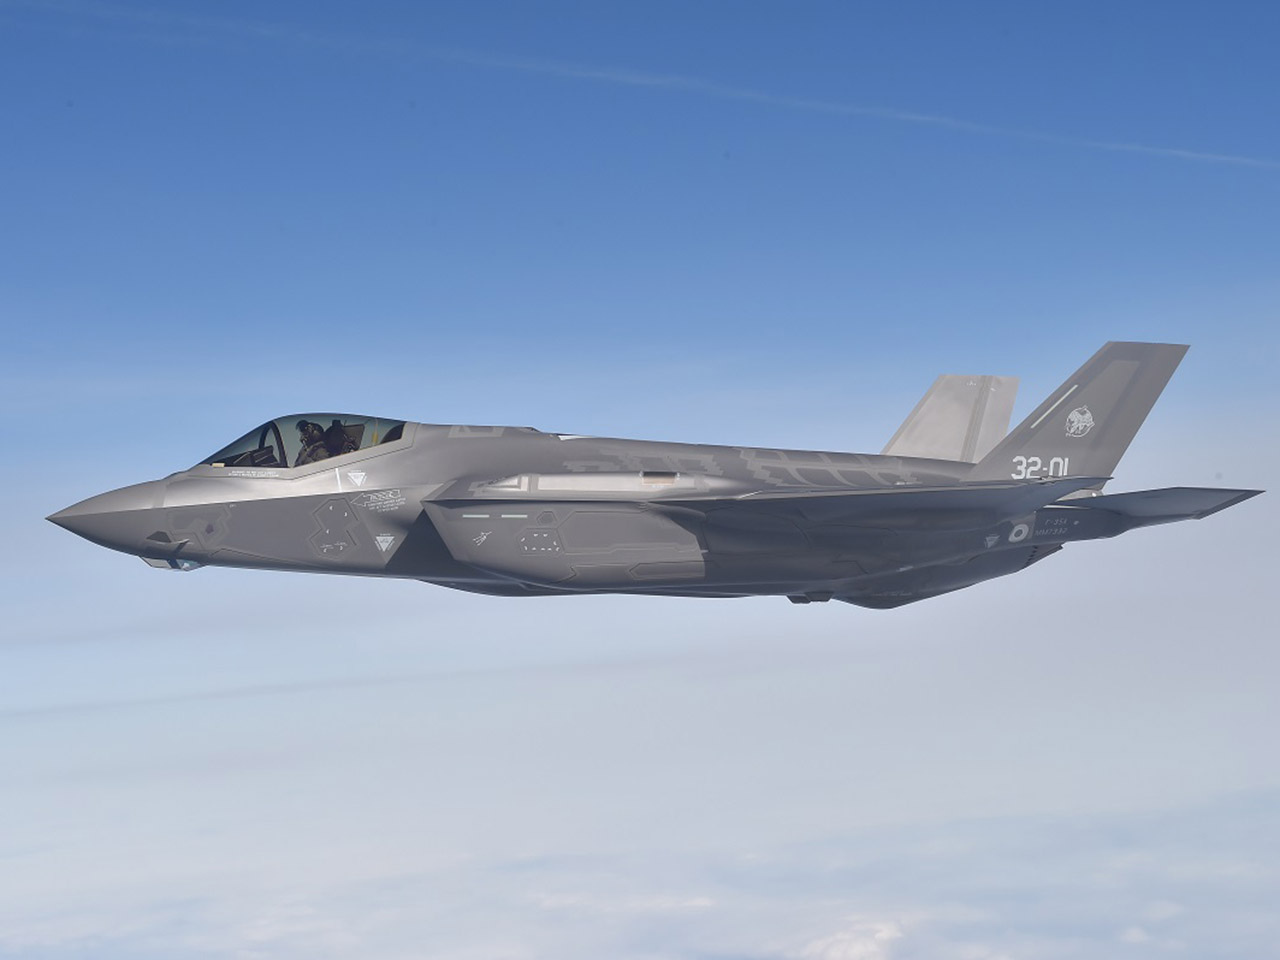 Ministerstvo obrany uvažuje o pořízení nových stíhaček F-35